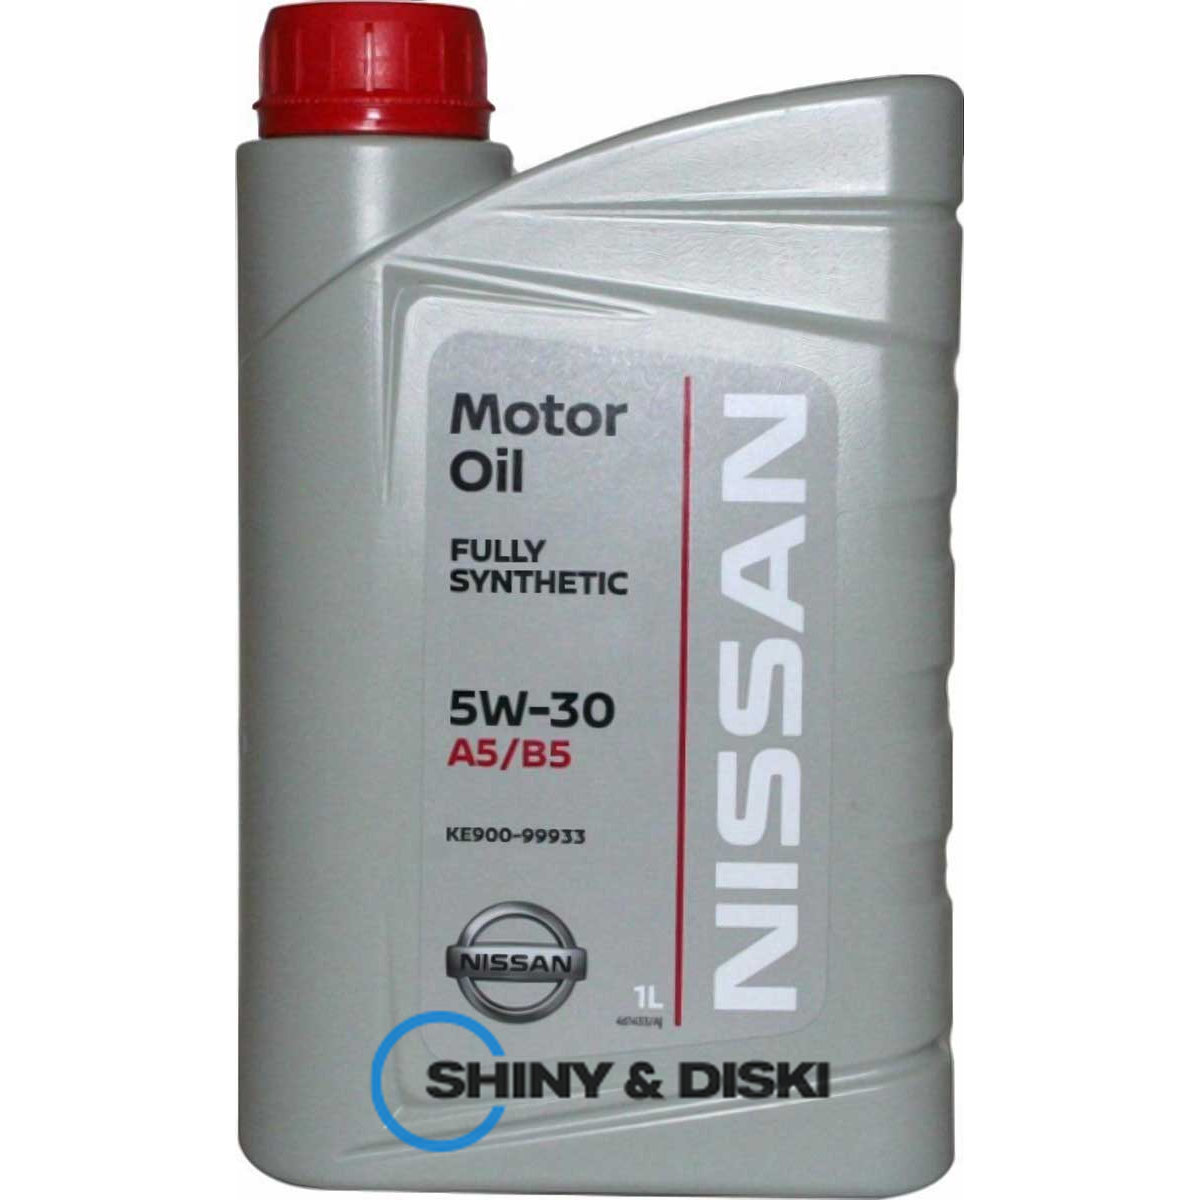 nissan motor oil 5w-30 a5/b5 (1л)